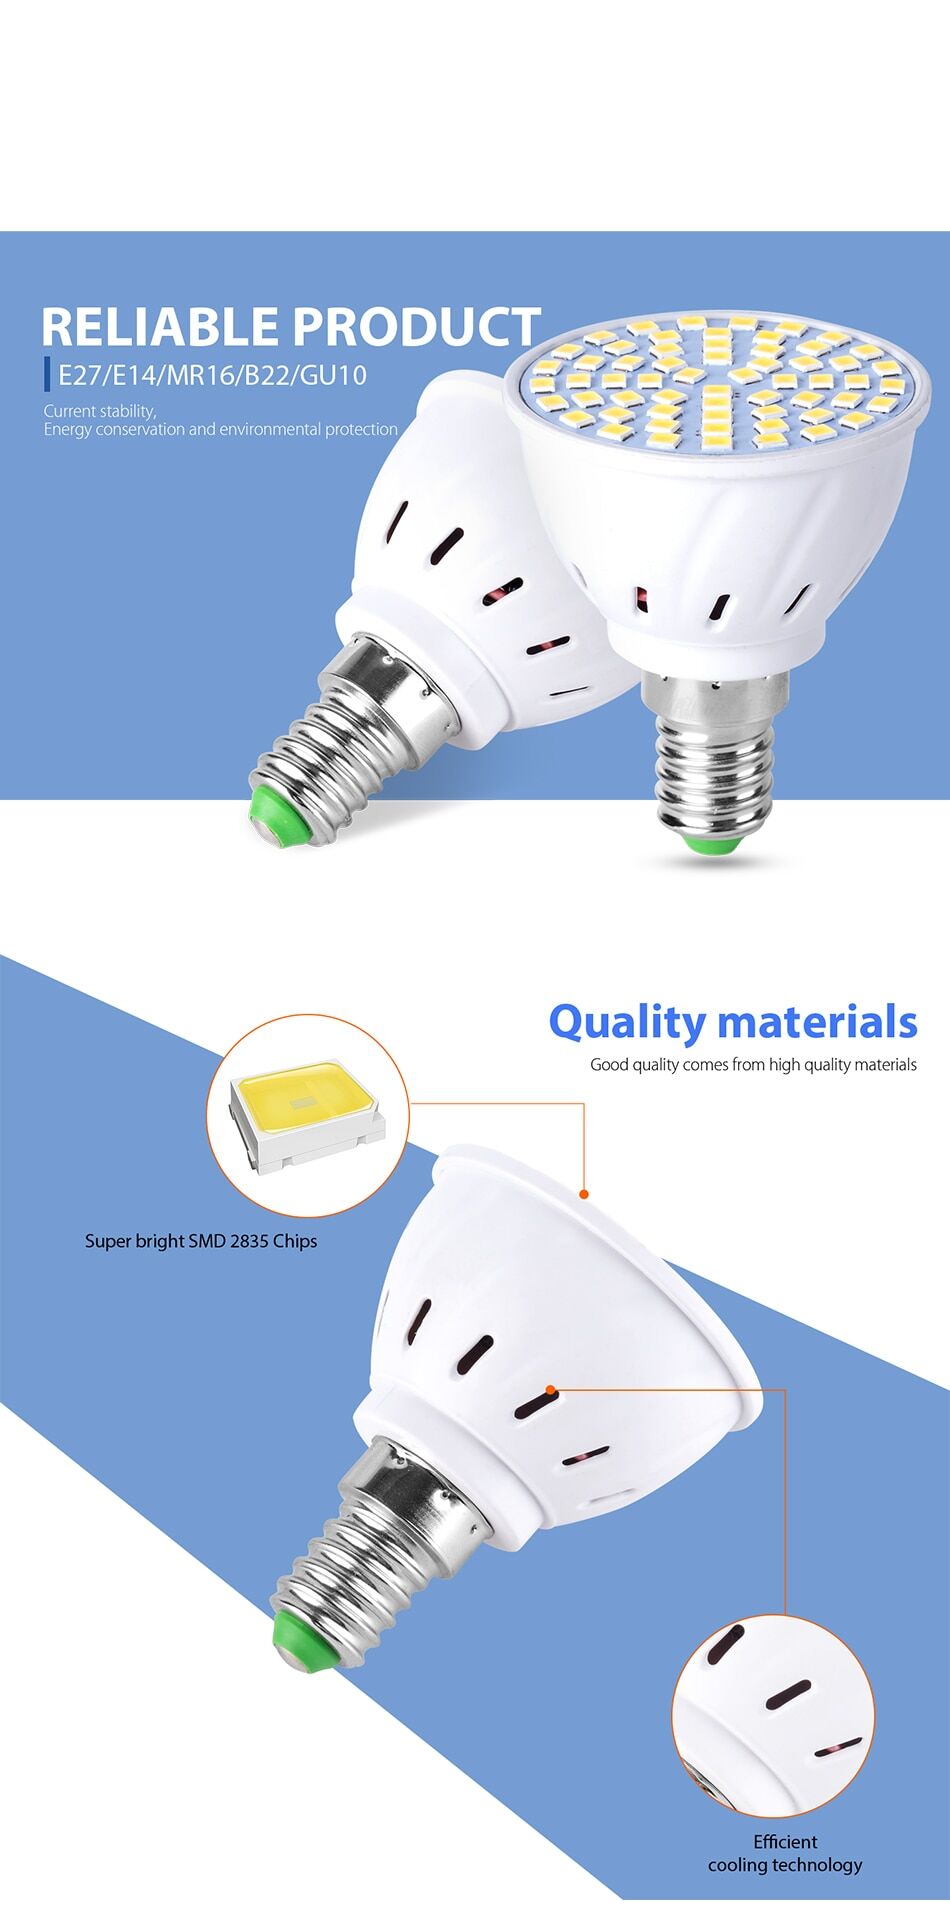 10pce 220V spot light bulbs LED 4w 6w 8w socket E27 E14 GU10 MR16 B22 € 26,21